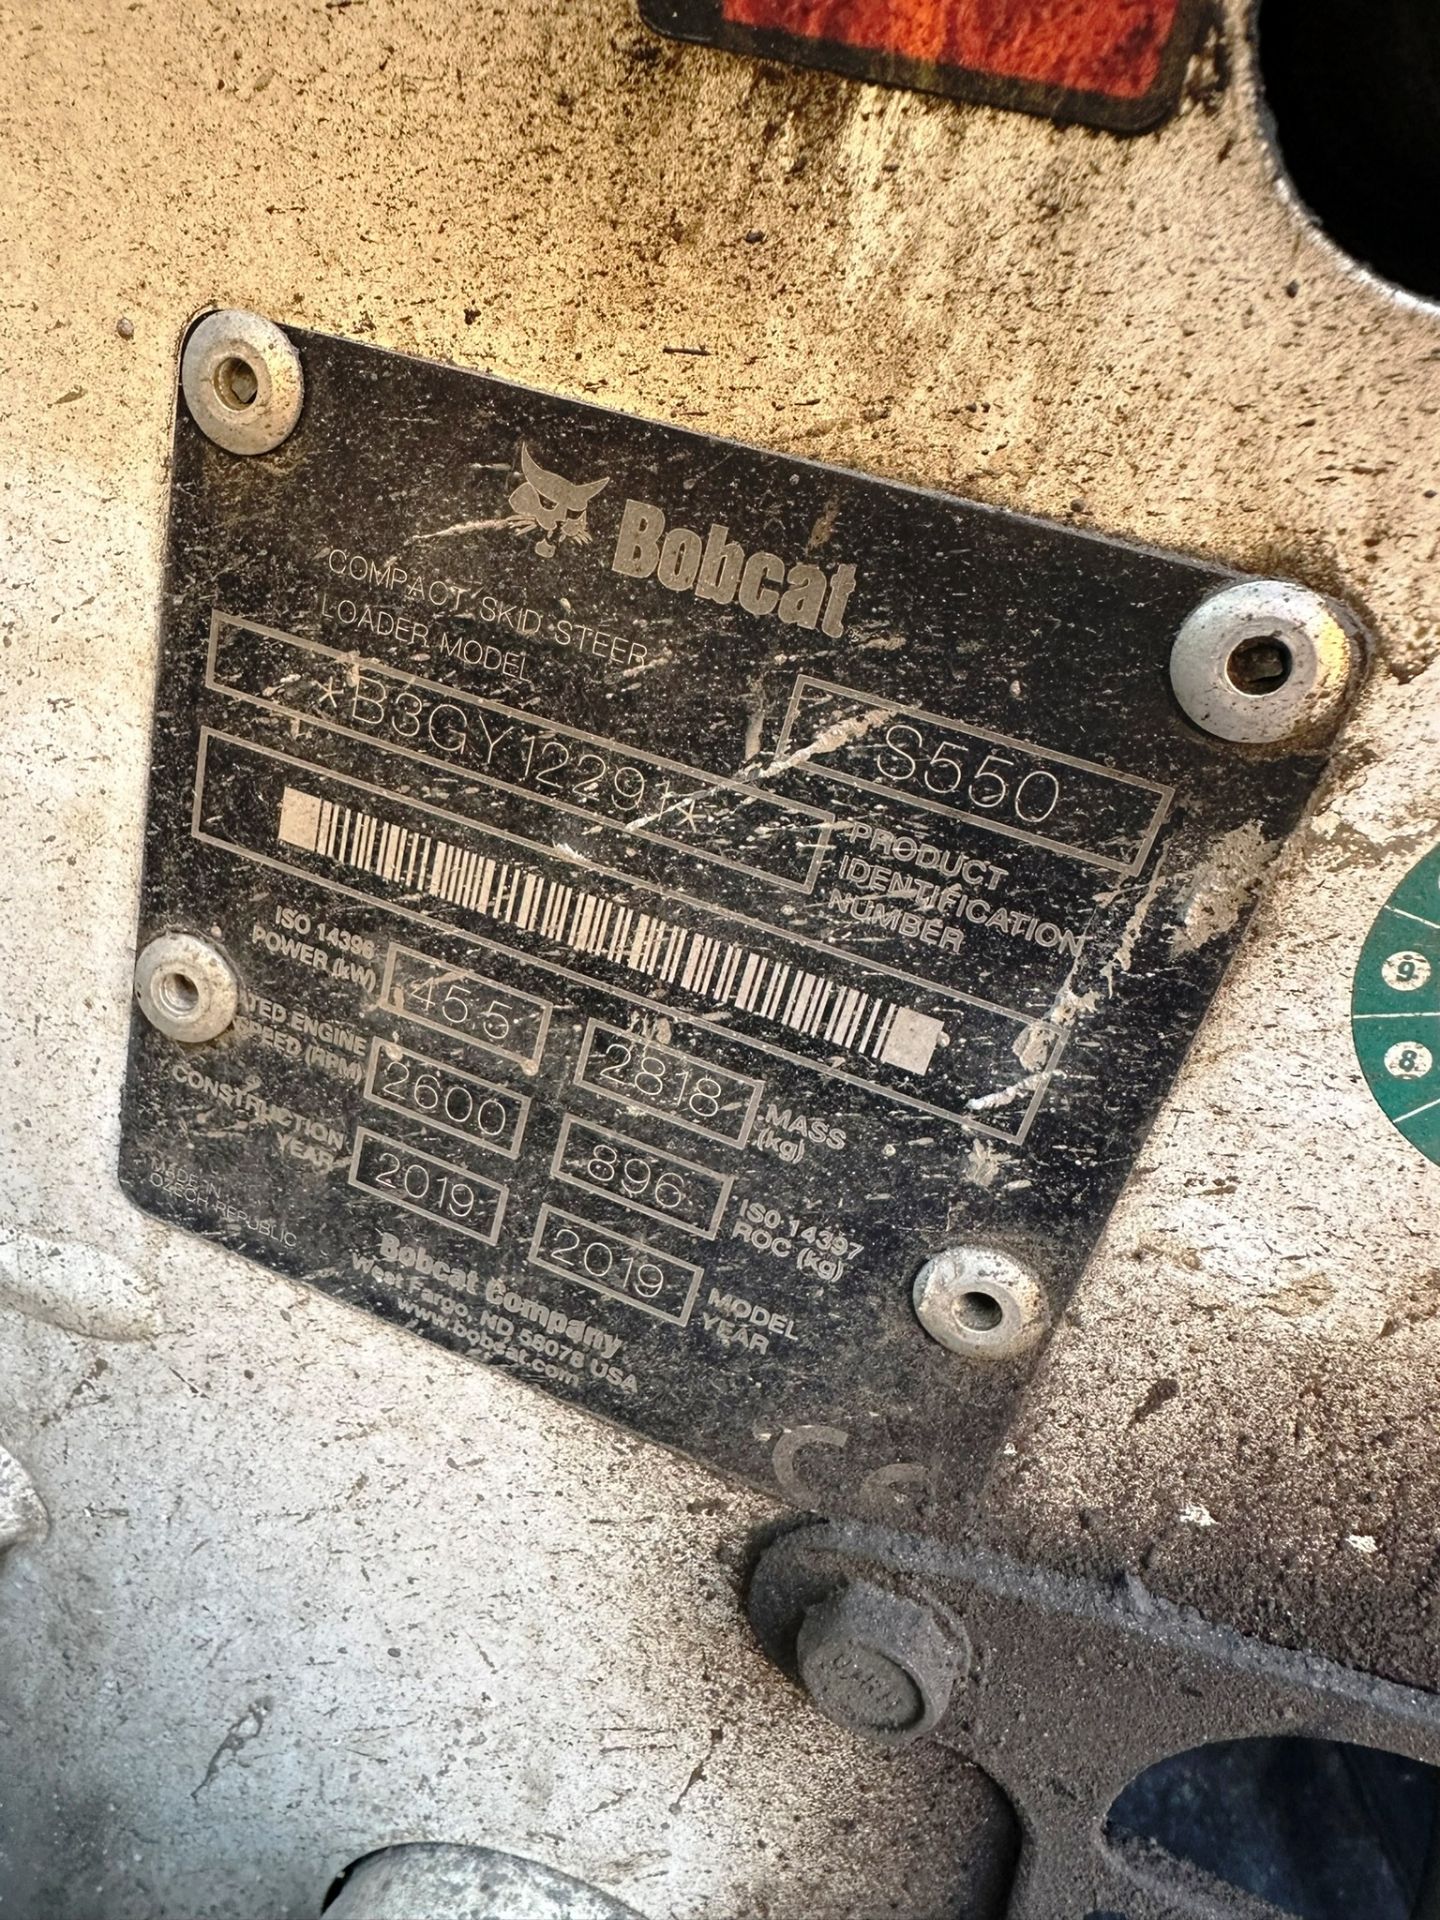 Bobcat S550 Skidsteer Loader | YOM: 2019 | Hours: 169 - Image 6 of 16